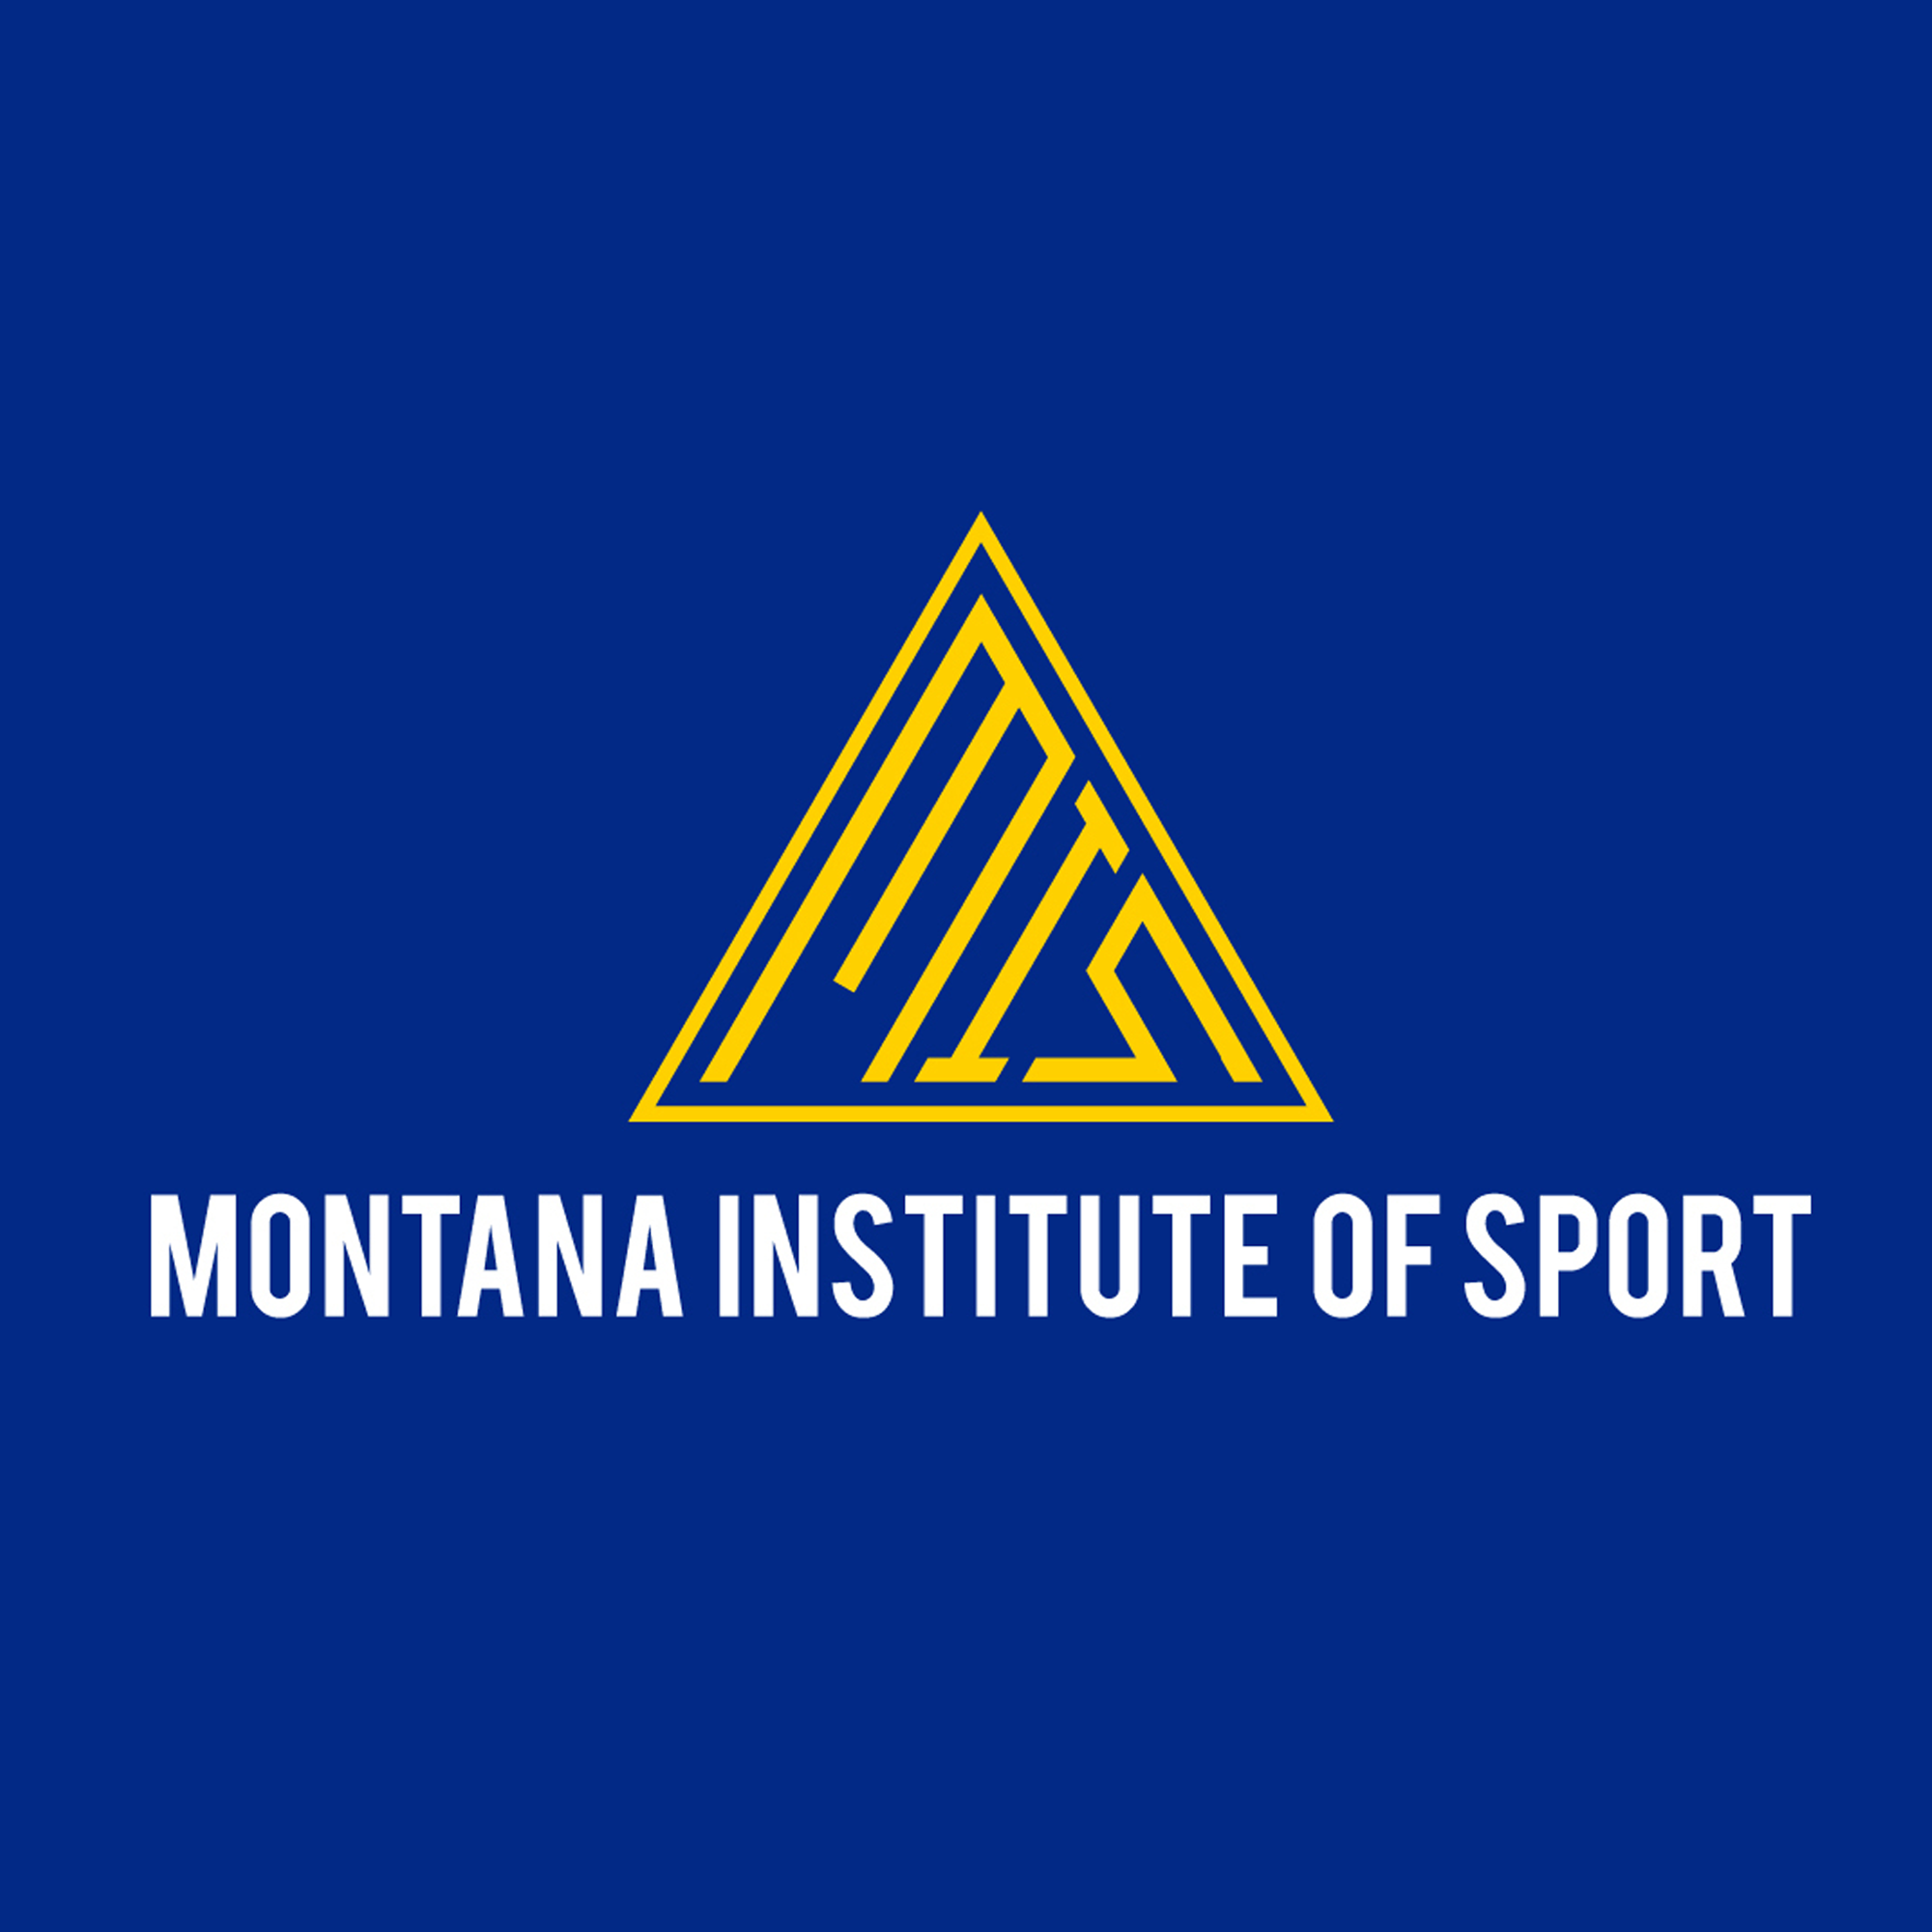 Montana Institute of Sport